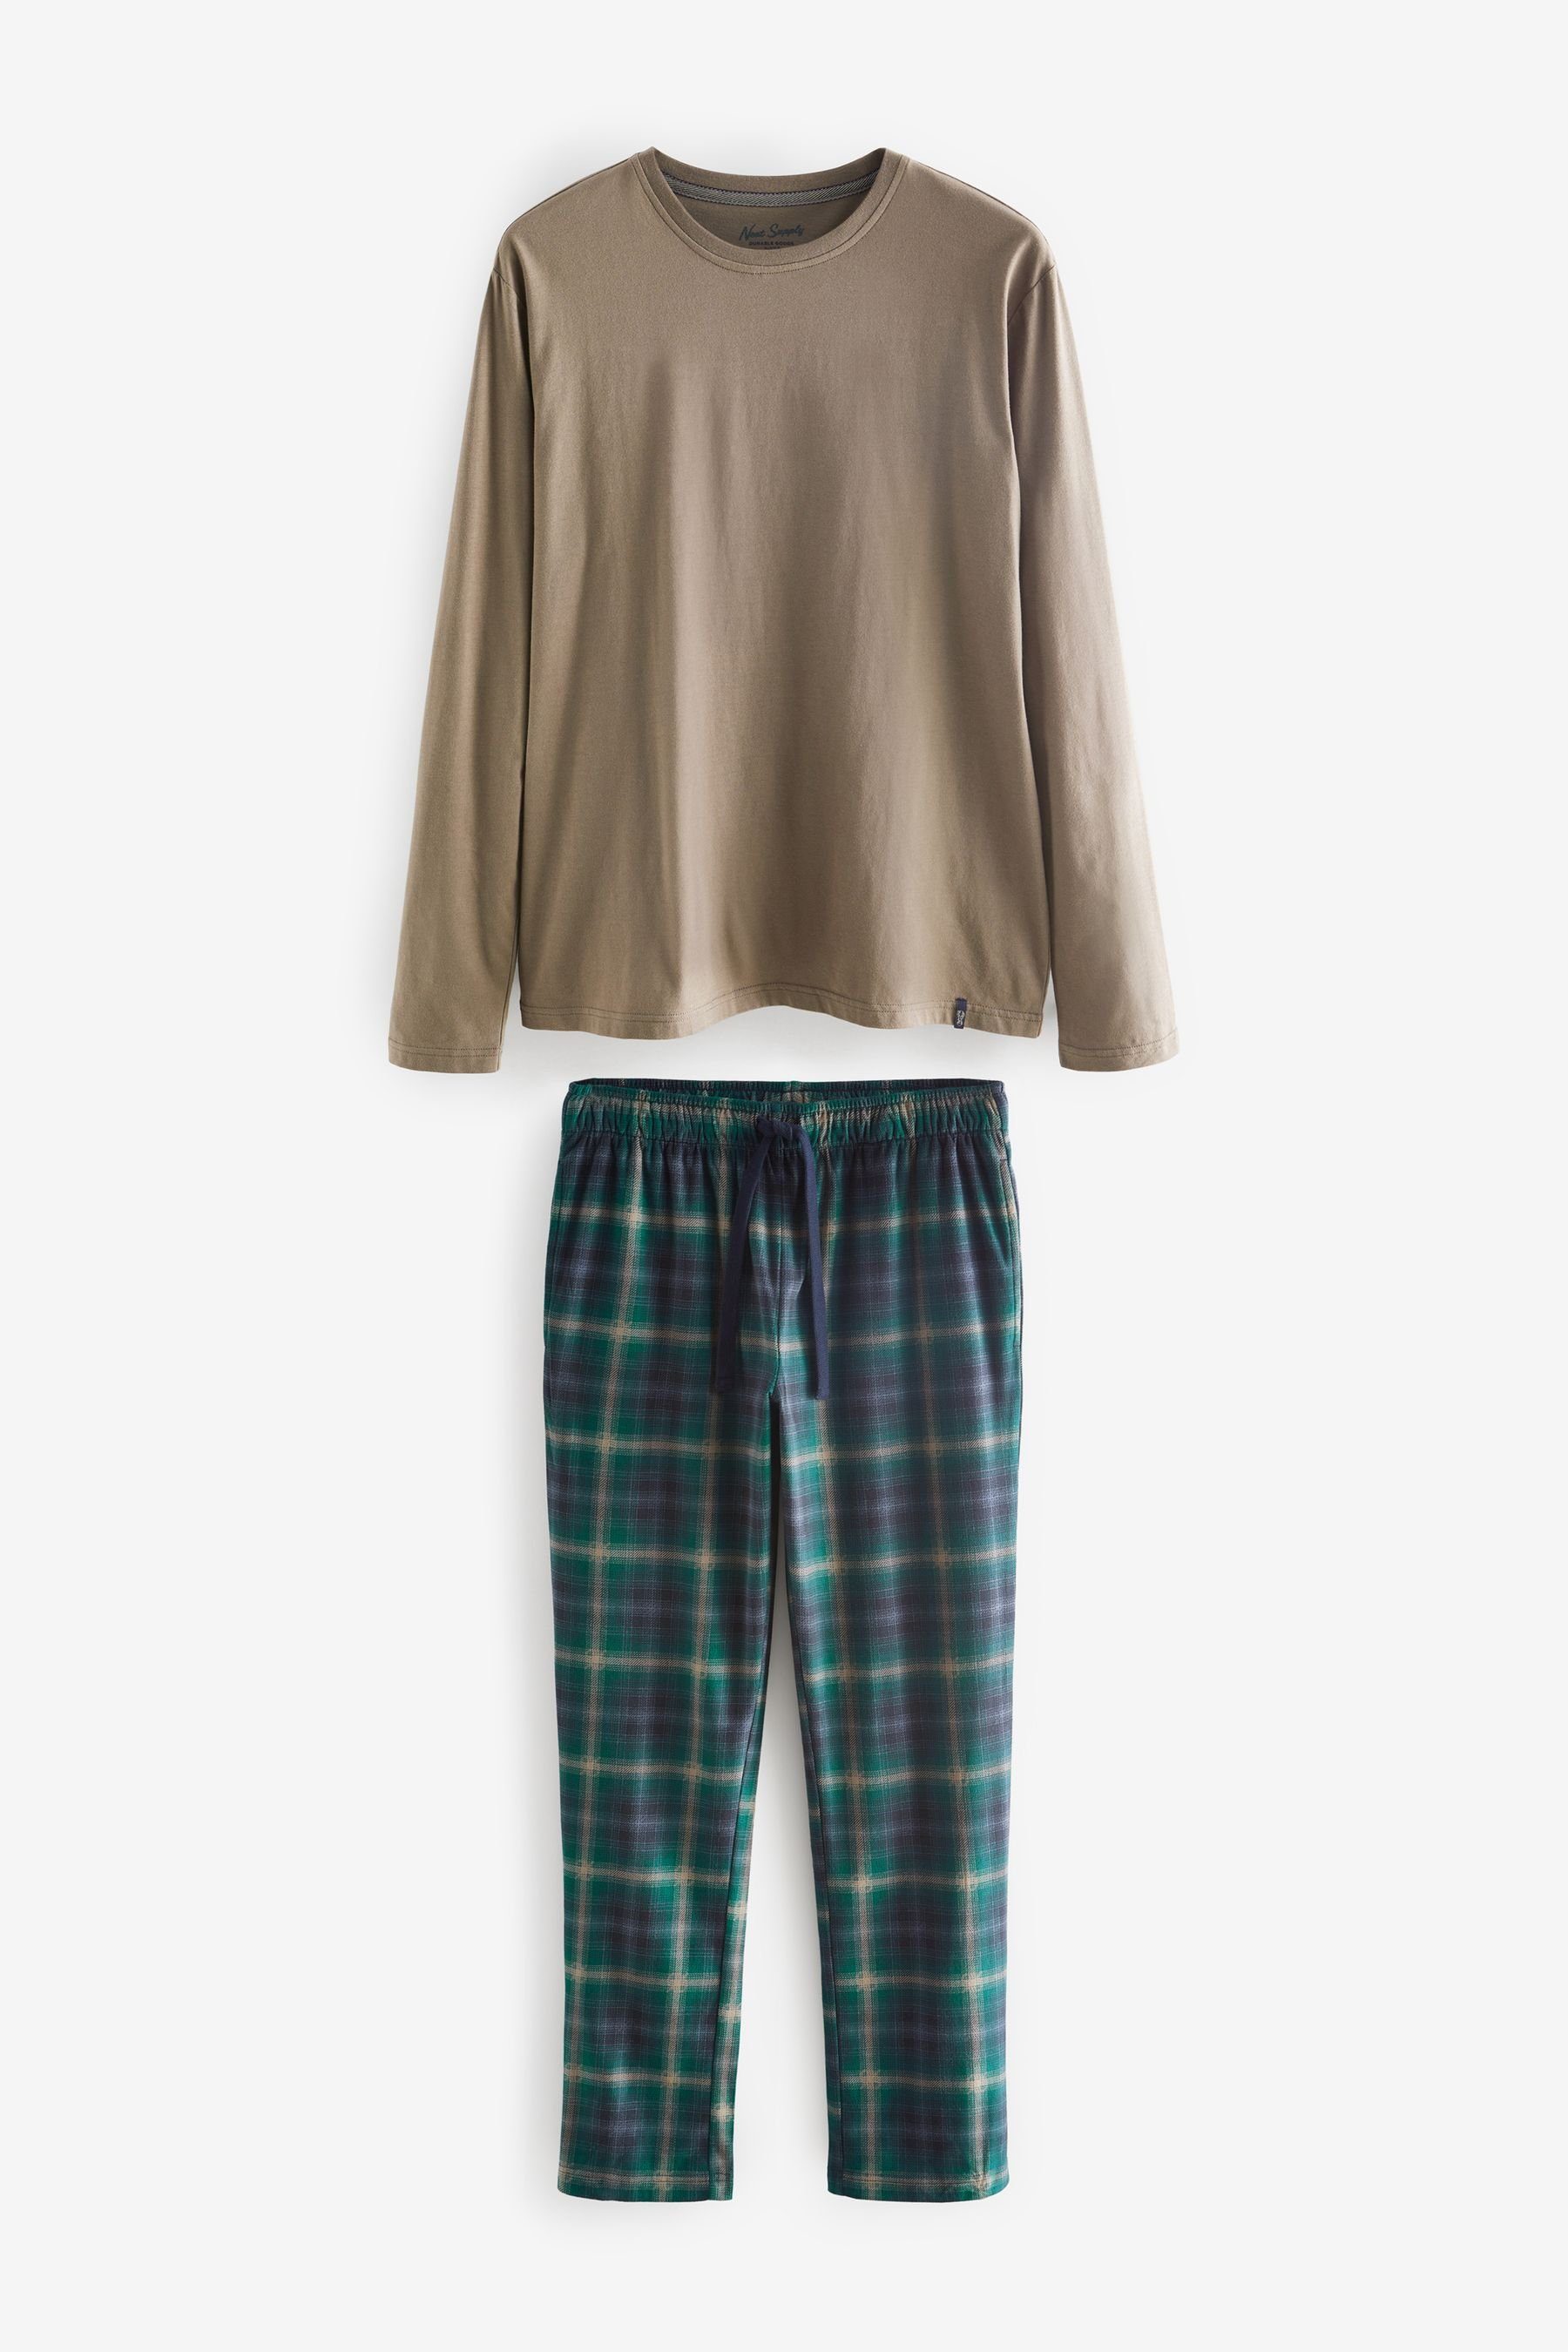 Next Pyjama Check Neutral/Green (2 Schlafanzug Motionflex Bequemer tlg)